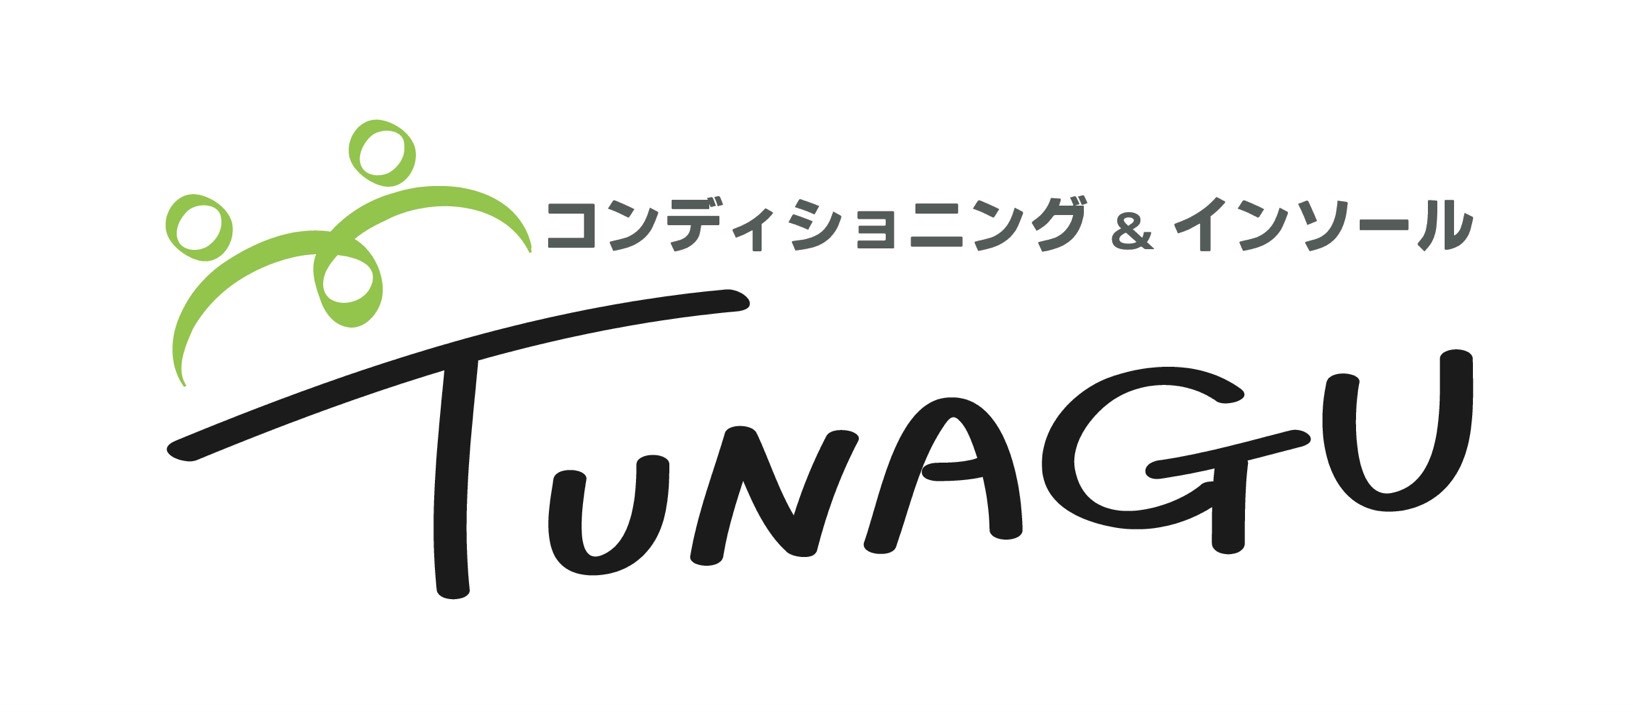 TUNAGU